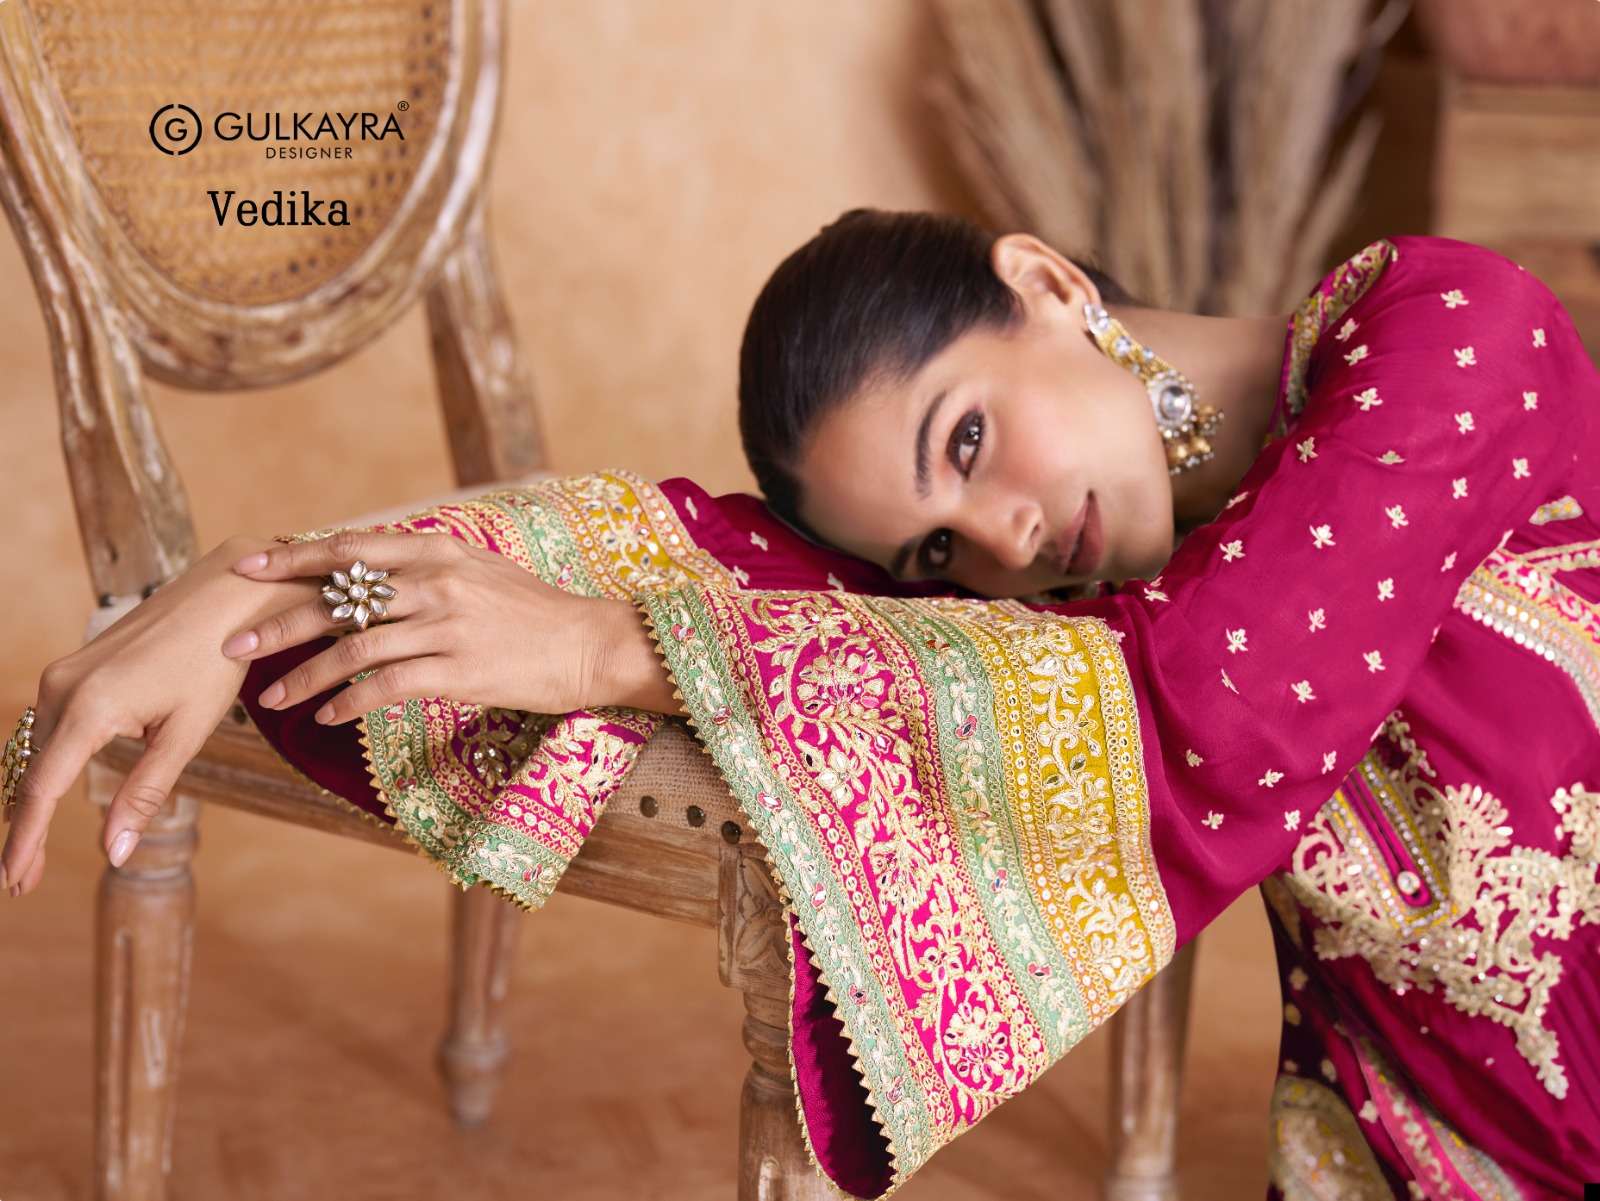 gulkayra designer vedika 7406 colour series designer readymade salwar kameez wholesaler surat gujarat